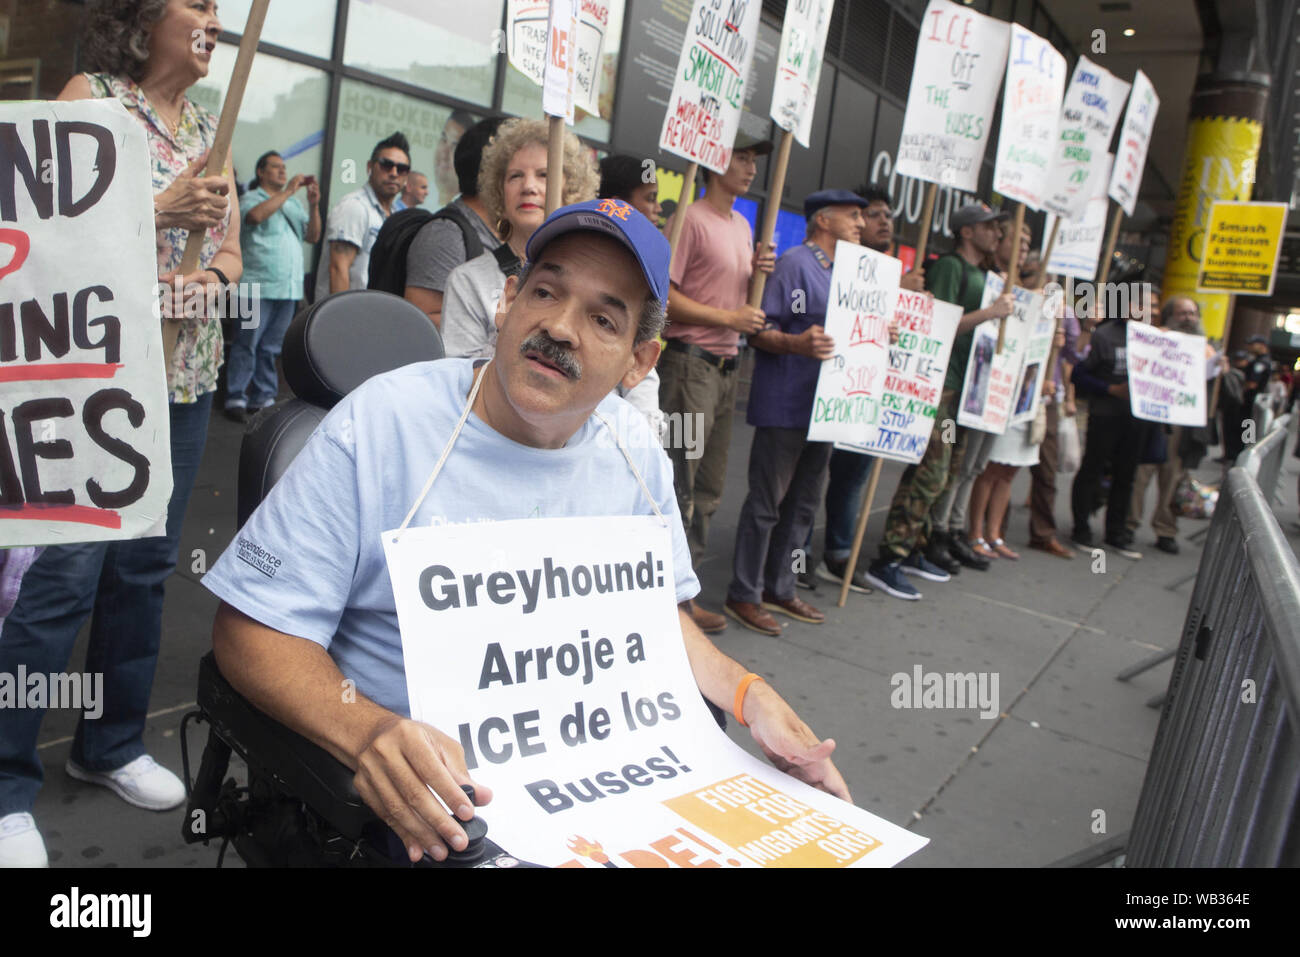 August 23, 2019: ROBERT AVECEDO, New York, erscheint während eines Protestes gegen Greyhound Corporation und Eis (Einreise Zoll- und Durchsetzung) am Port Authority Bus Terminal in der 42. und 8. Avenue in New York, New York. Über 100 Aktivistinnen aus einer Koalition von Gruppen einschließlich Feuer (für ausländische Flüchtlinge überall Kämpfen) Greyhound, EIS Agenten ihre Busse 'suchen für Migranten zu protestiert", sagten Beamte. "Als behinderte Person ich dies zu unterstützen wollte." "Avecedo sagte. Credit: Brian Zweig Preis/ZUMA Draht/Alamy leben Nachrichten Stockfoto